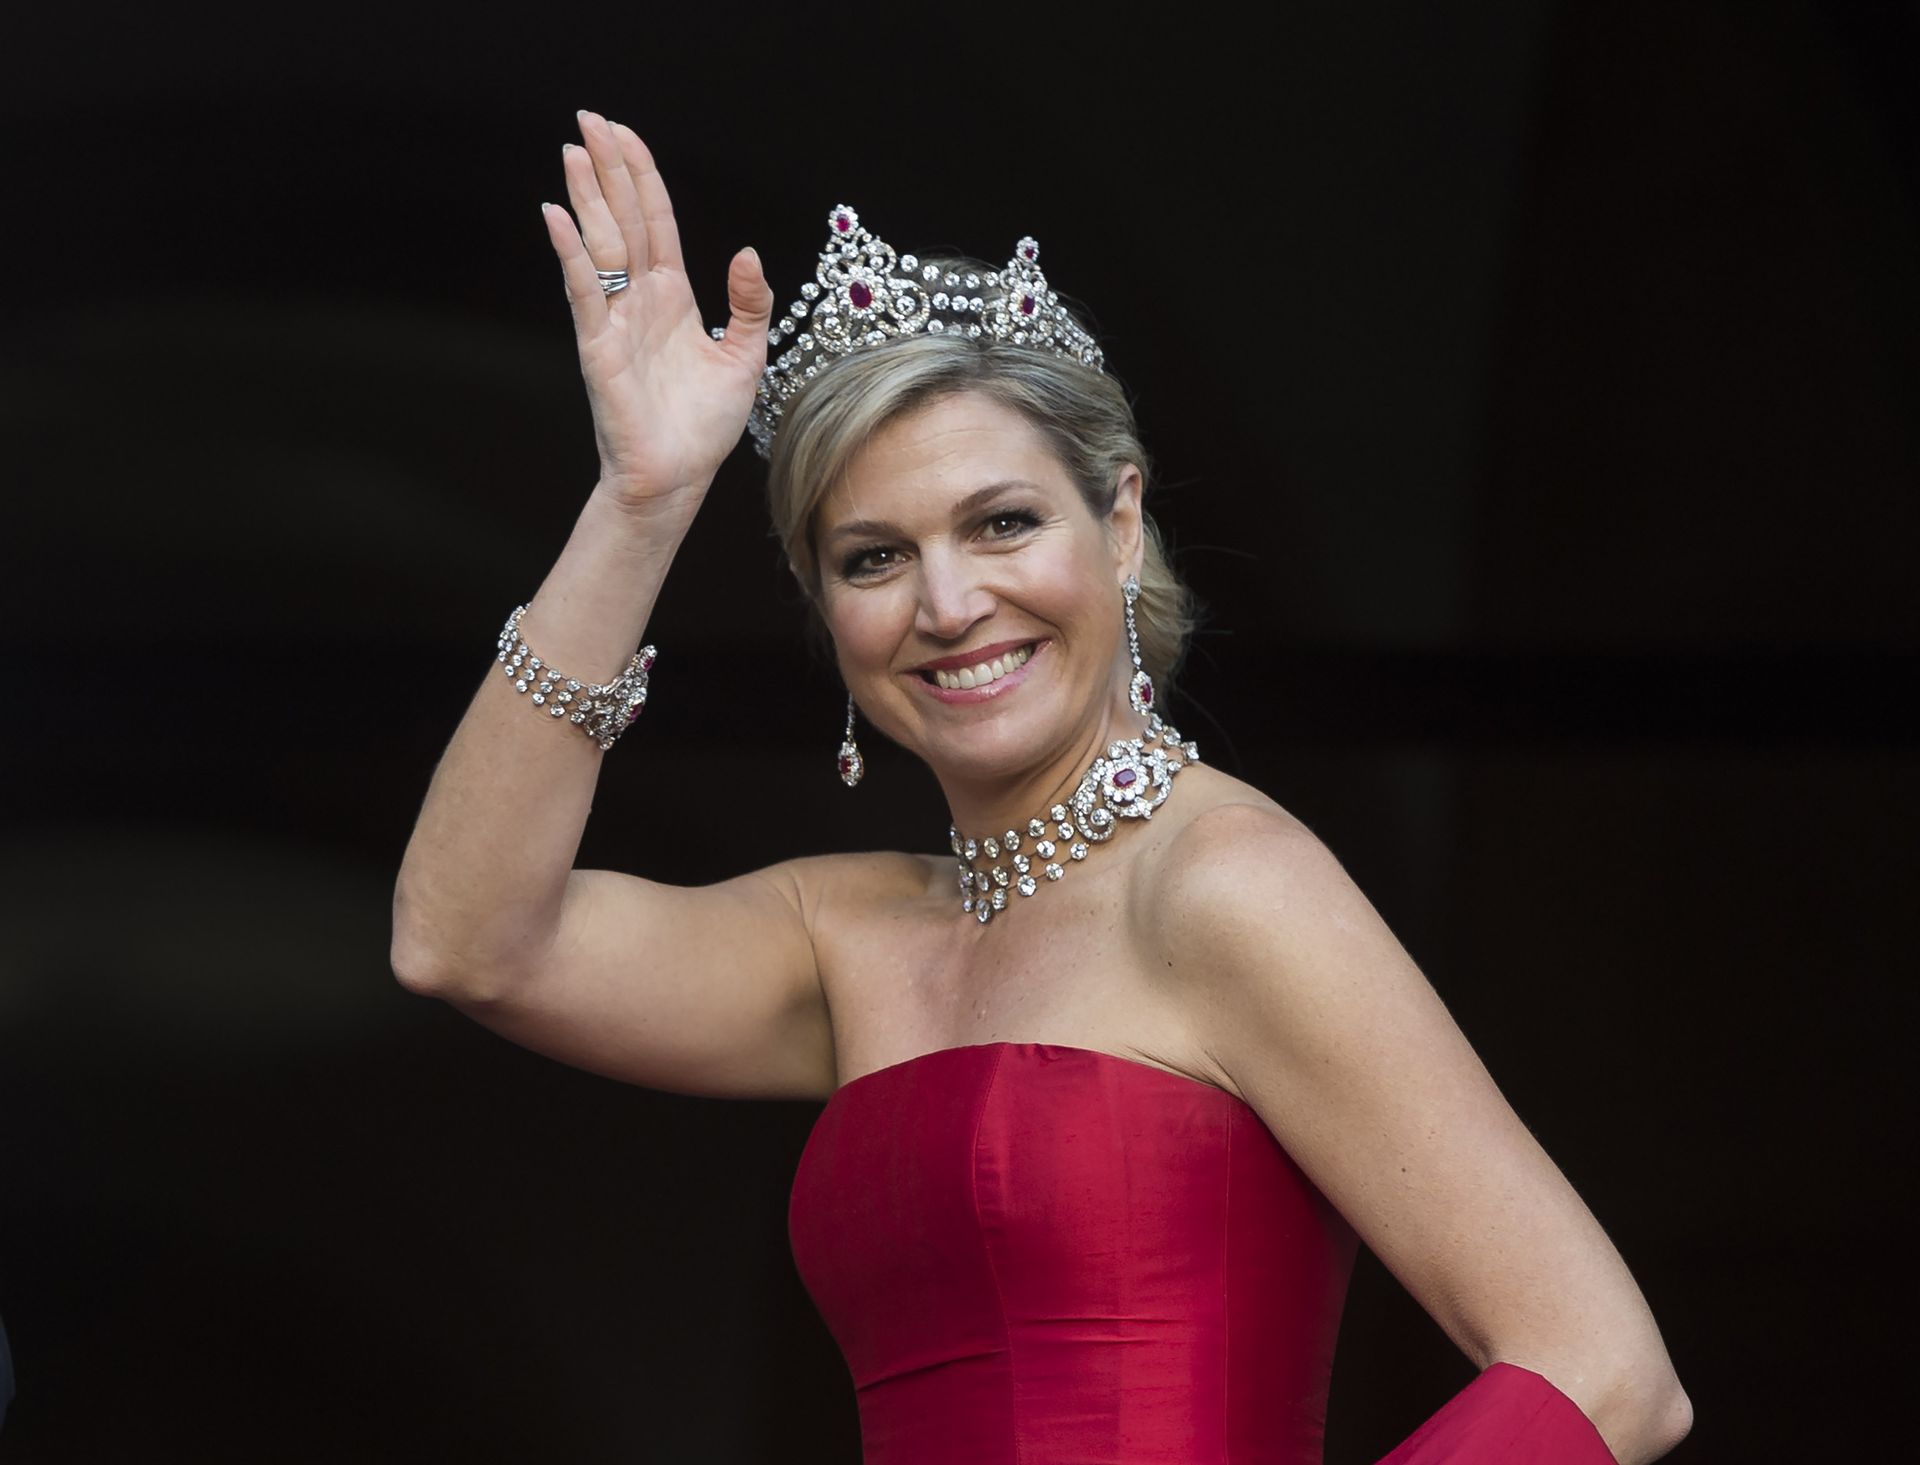 2014 - Koningin Máxima komt aan bij het paleis op de Dam, waar het koningspaar leden van het Corps Diplomatique ontvangt voor het jaarlijkse galadiner.